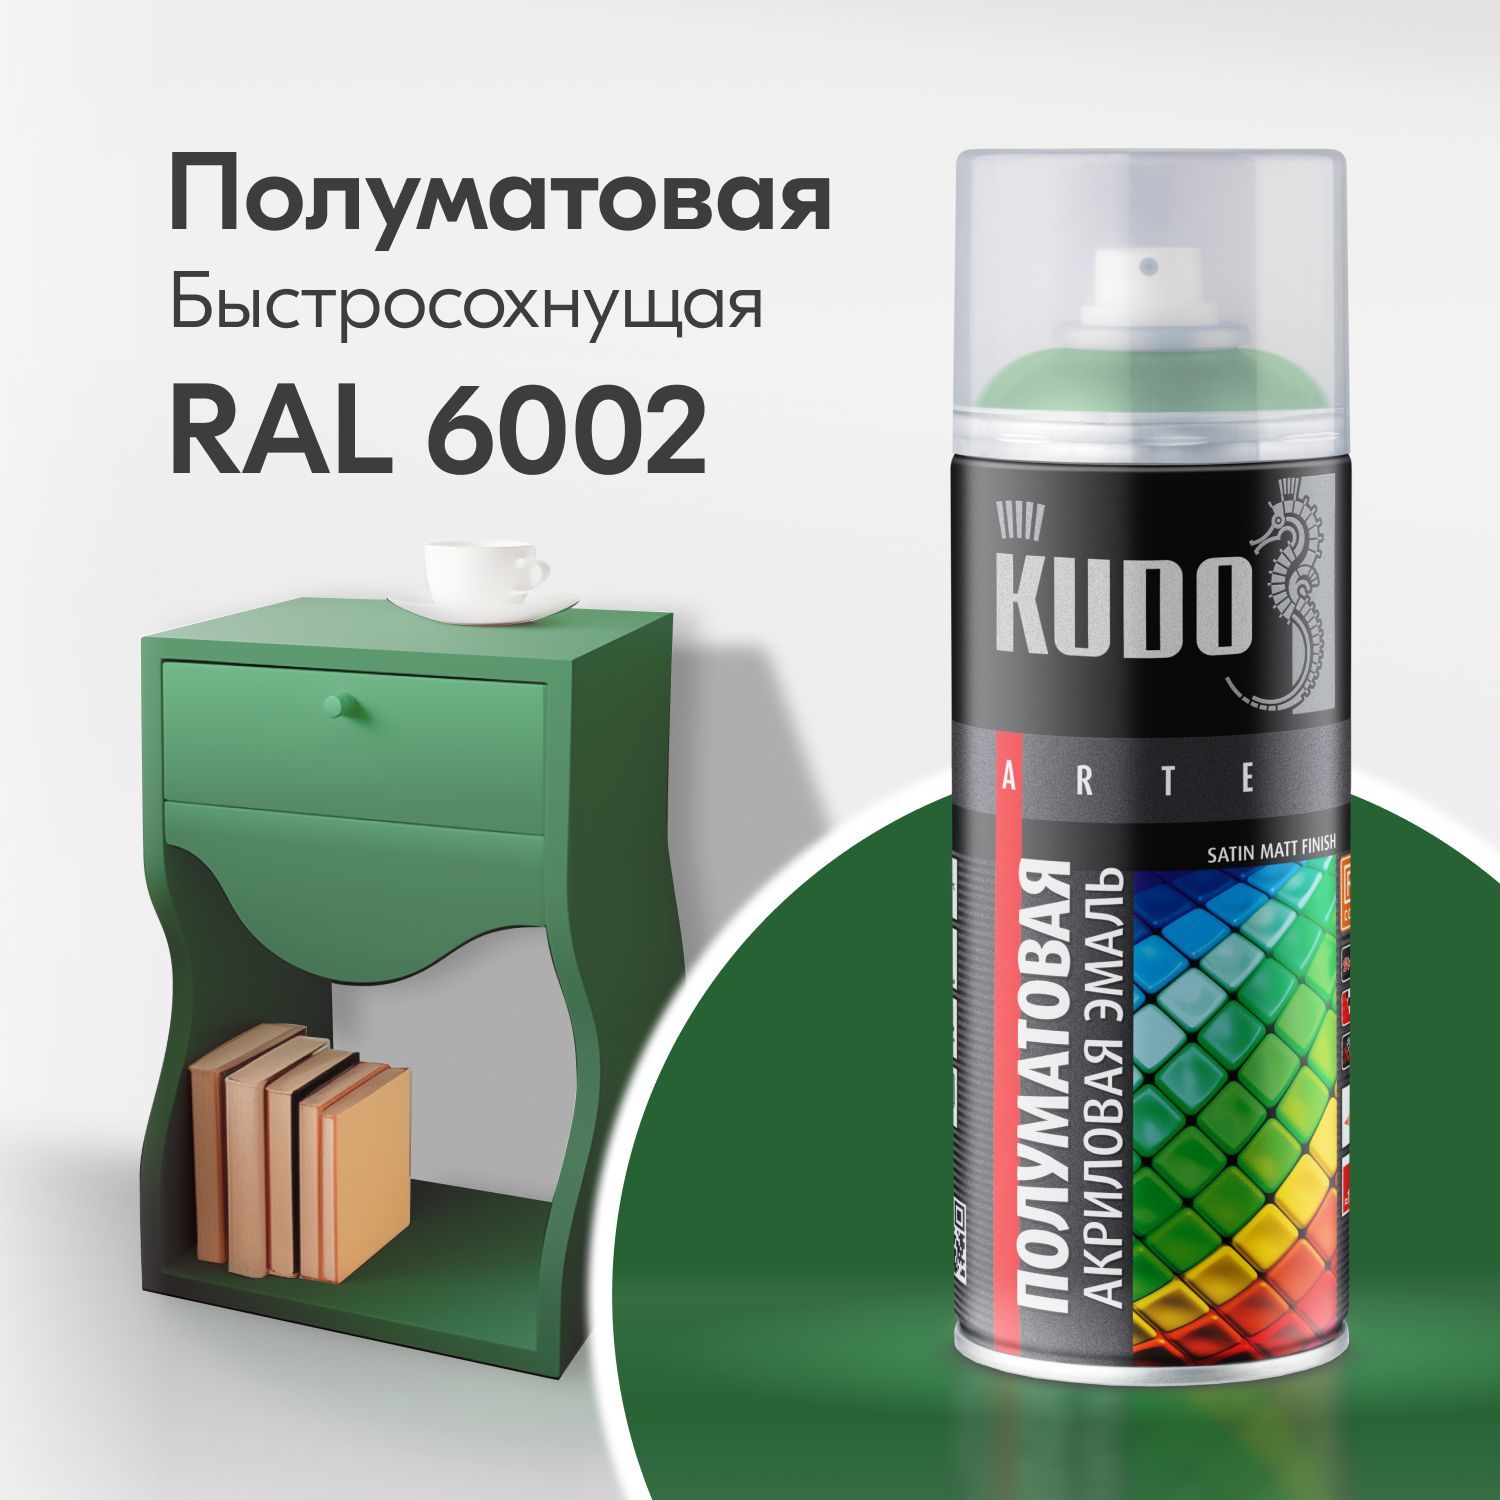 Аэрозольная акриловая краска Kudo Satin KU-0A6002, 520 мл, зеленая листва краска vincent royal satin a 2 универсальная база а 2 25 л